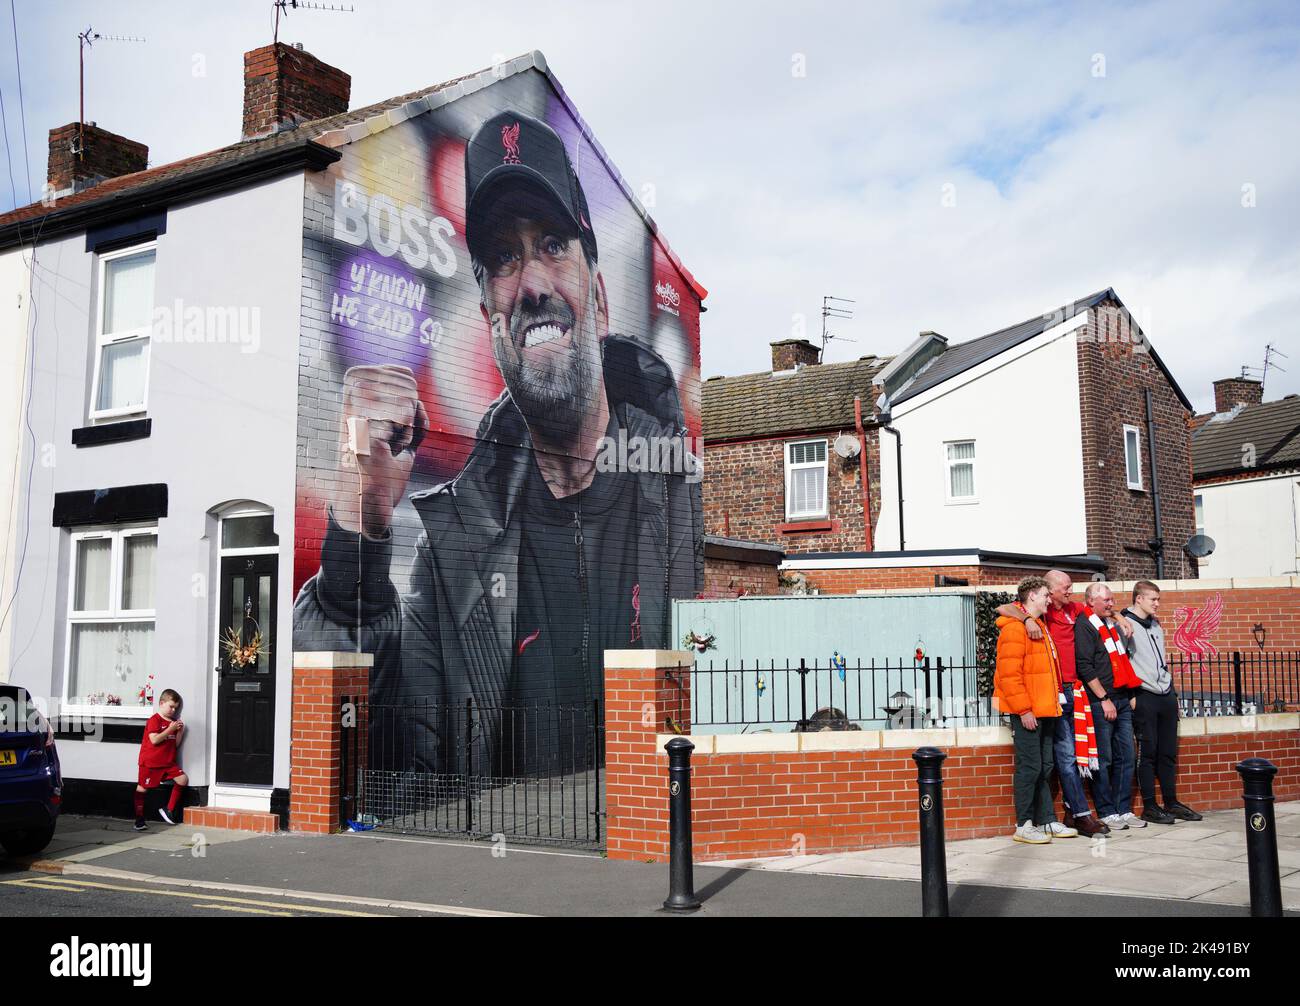 Ein Blick auf das Tribute-Wandbild des Liverpooler Managers Jurgen Klopp von BOSS Night und MurWalls in der Randolph Street in der Nähe des Stadions vor dem Premier League-Spiel in Anfield, Liverpool. Bilddatum: Samstag, 1. Oktober 2022. Stockfoto